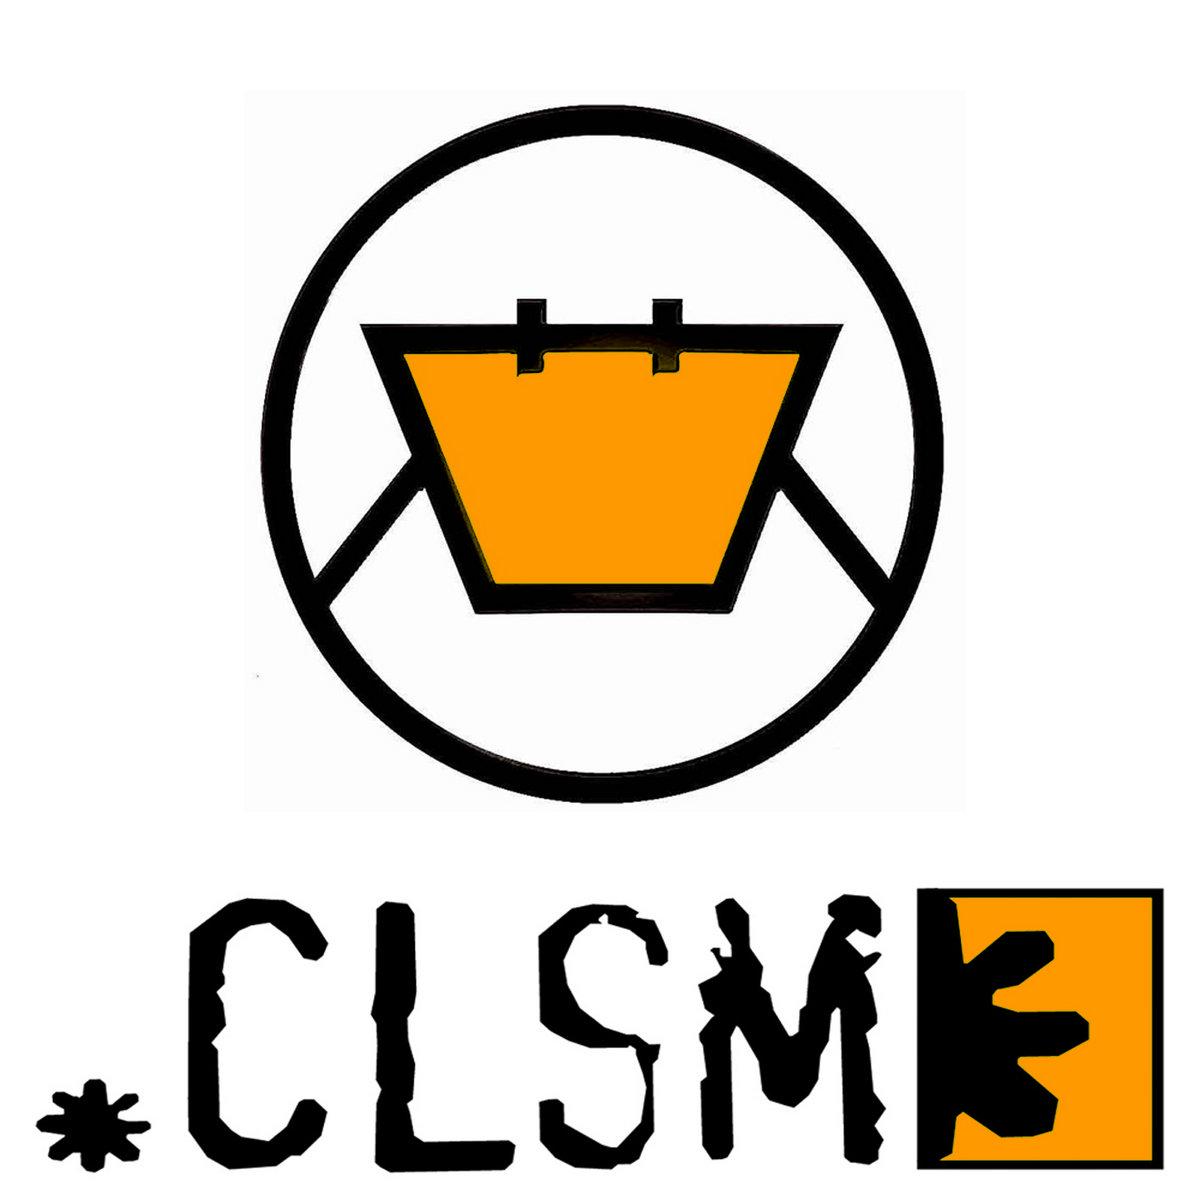 CLSM at Orange Rooms